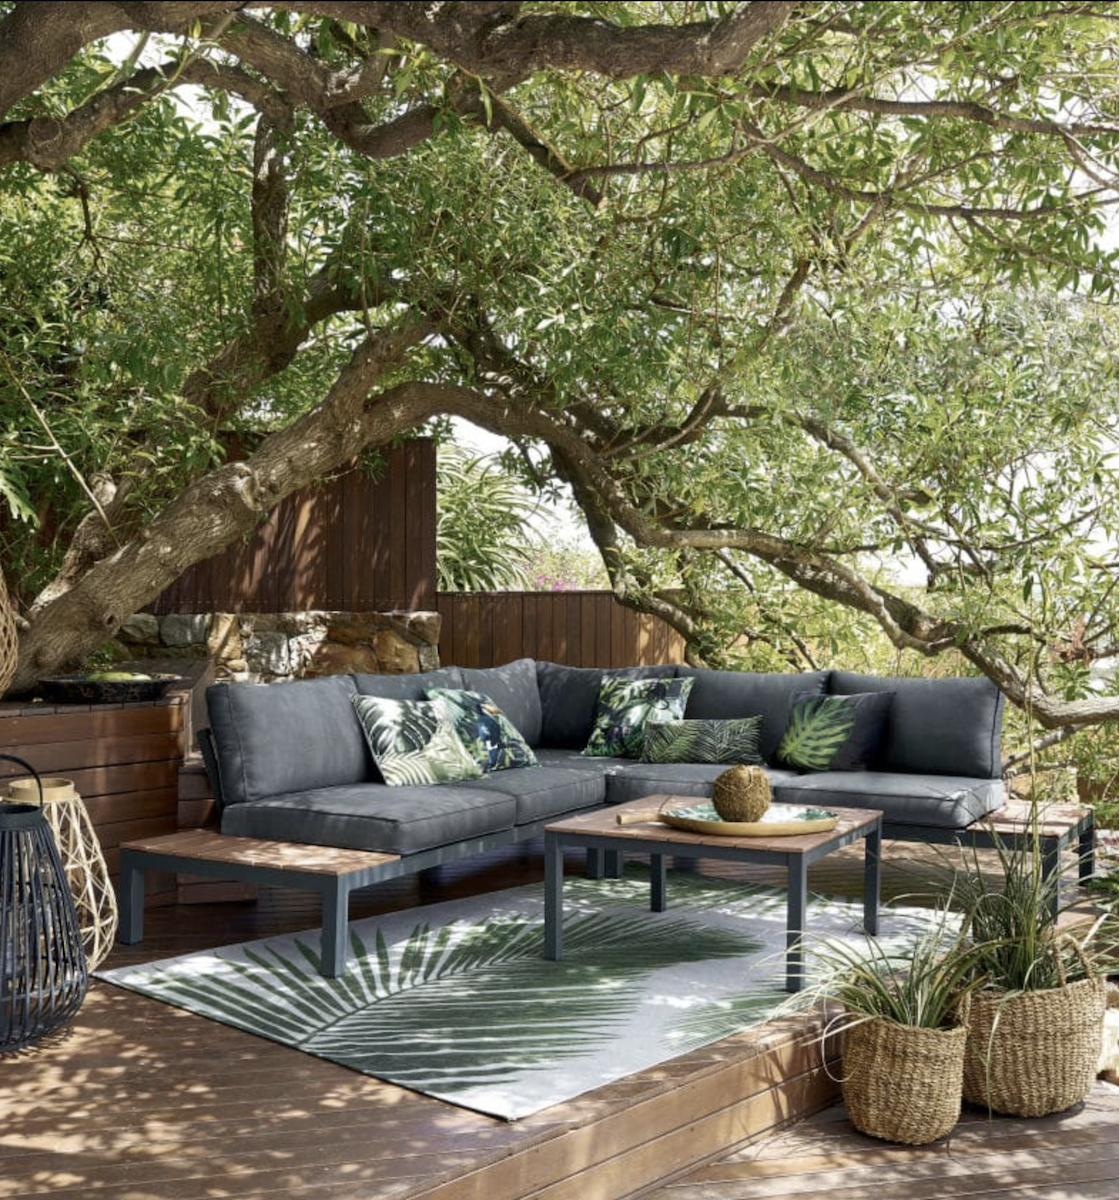 où trouver un tapis d extérieur pas cher style jungle feuillage palmier terrasse bois table basse panier déco décoration clematc